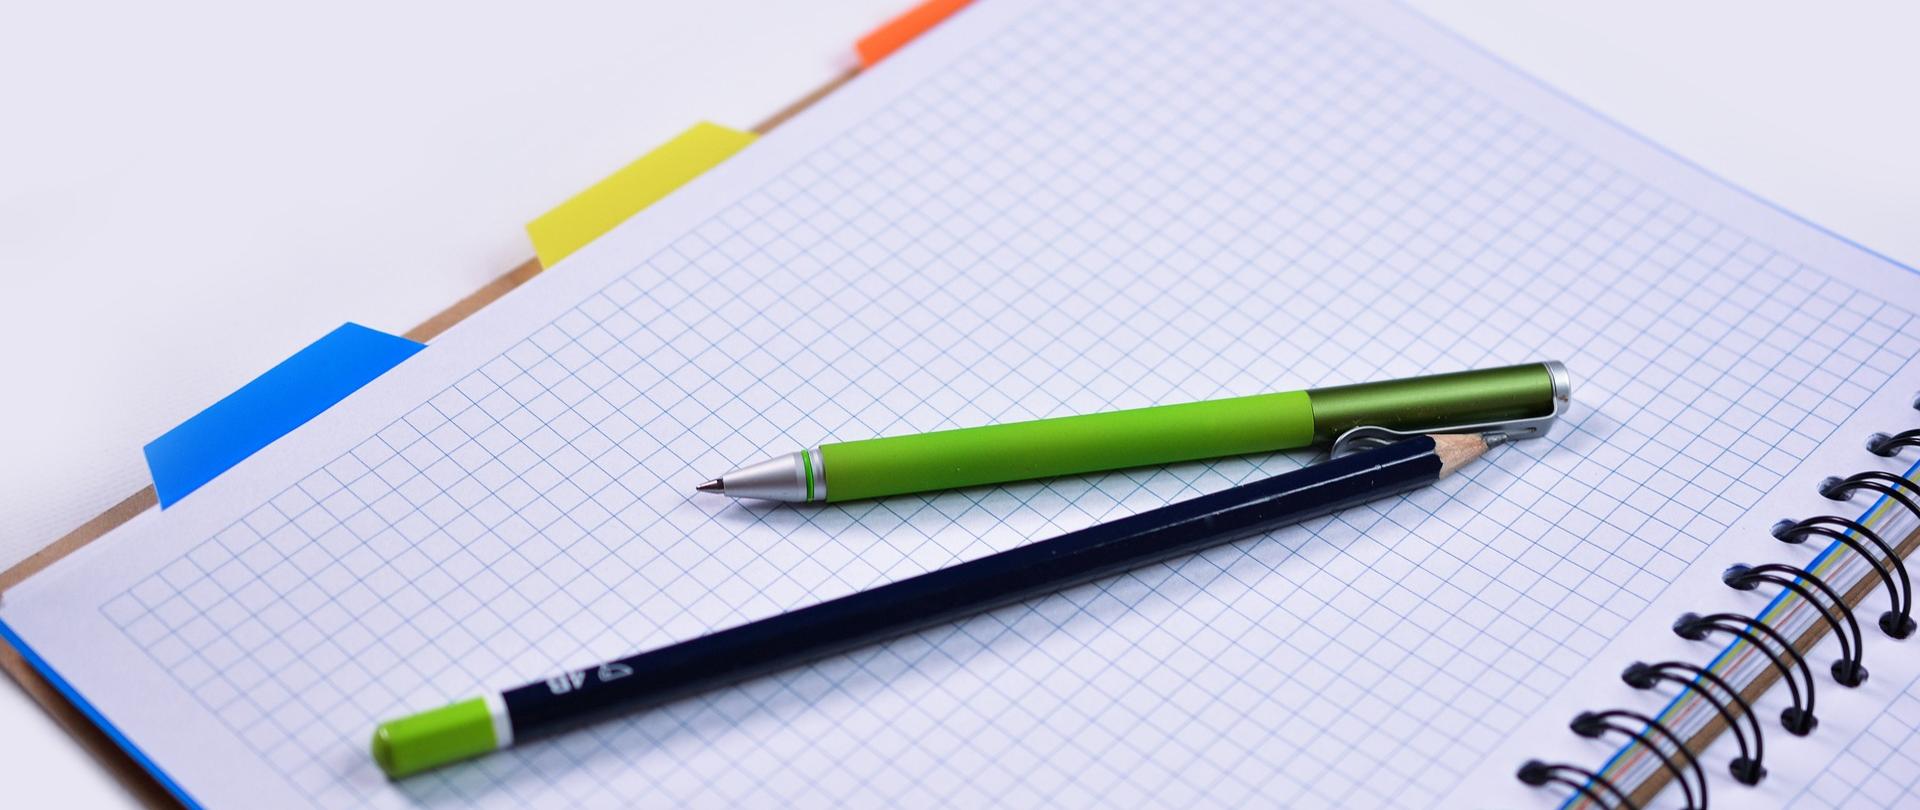 Długopis i ołówek położone na otwartym notatniku w kratkę z kolorowymi zakładkami